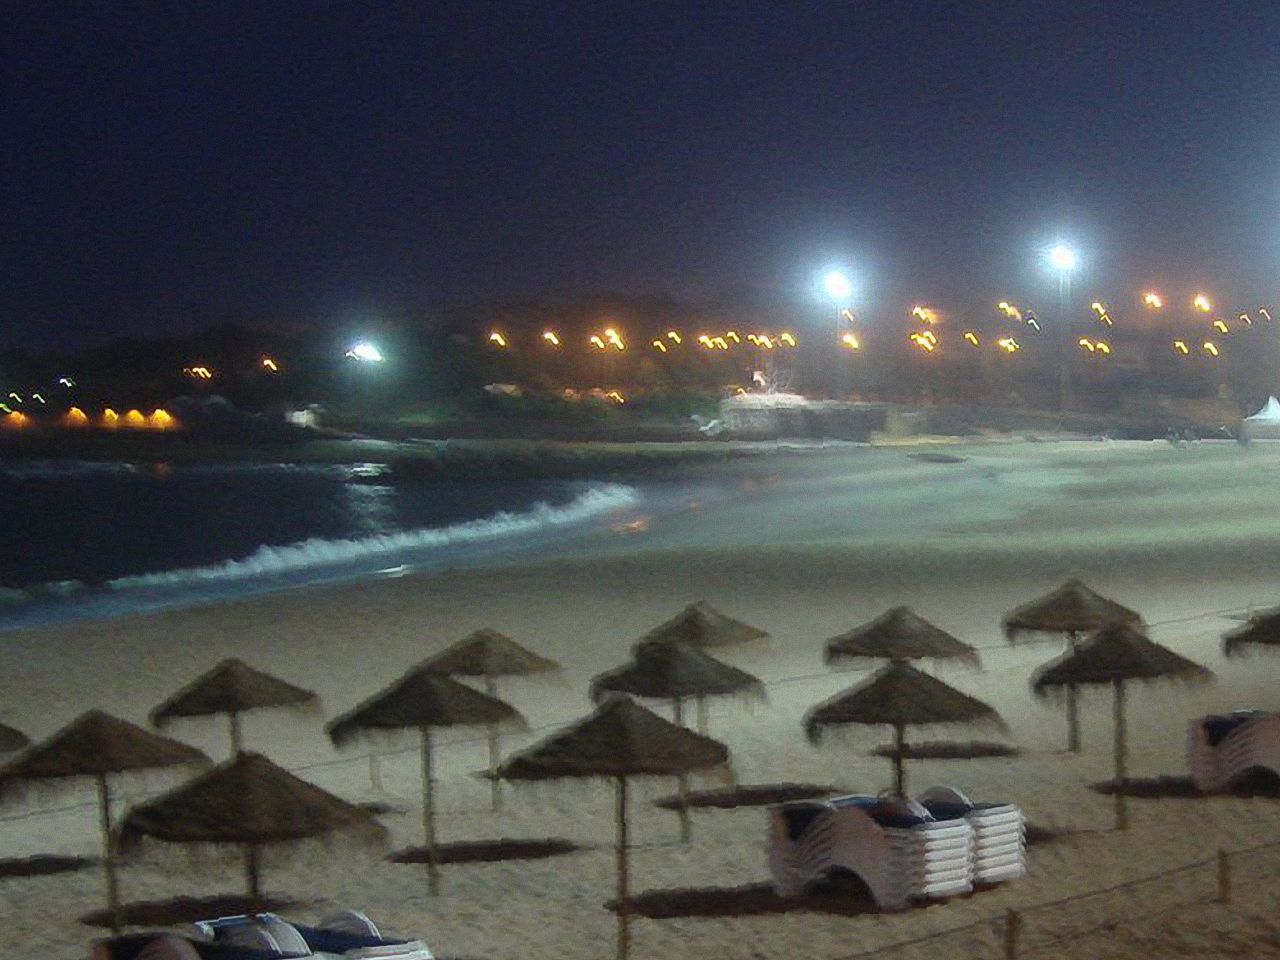 Santo Amaro Beach at night in Oeiras, Portugal